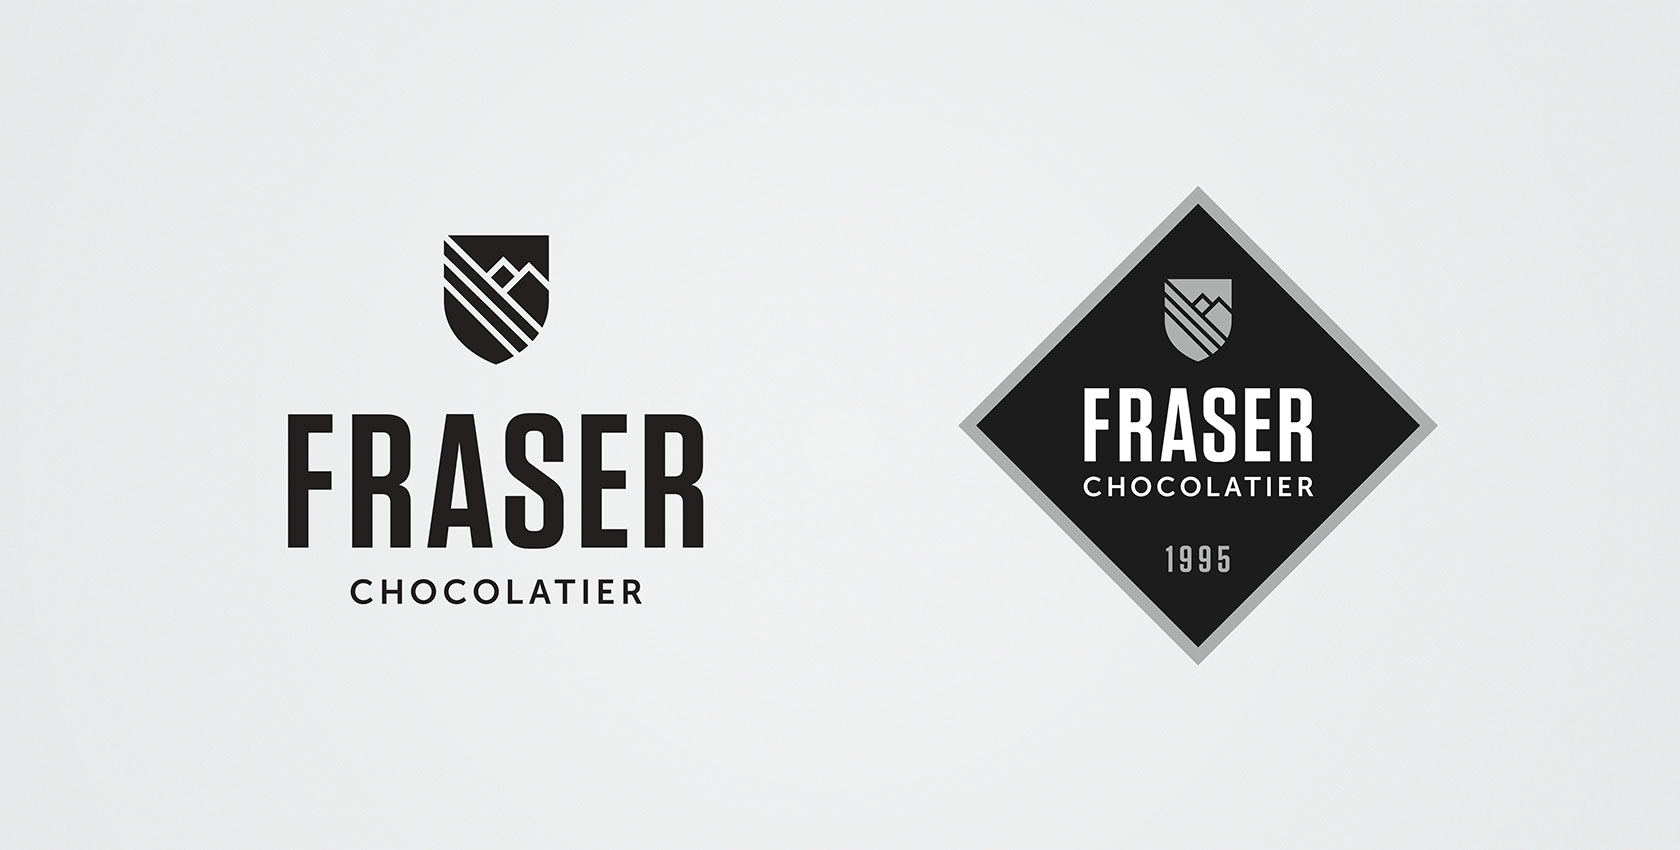 Fraser Chocolatier